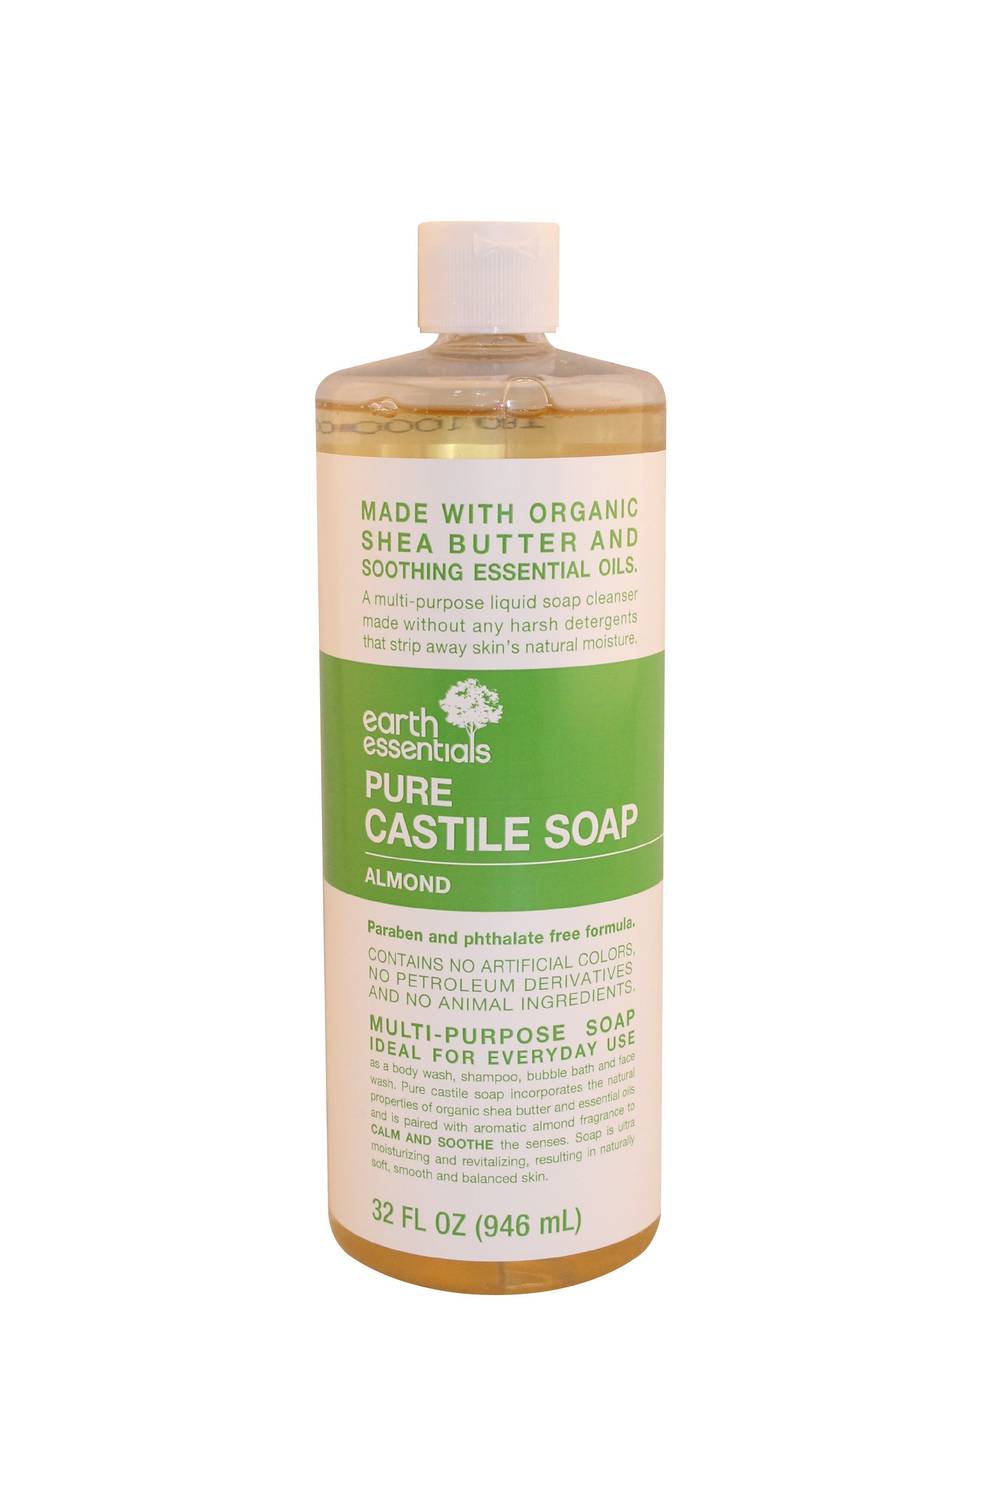 Earth's Essentials Castile Soap Almond, 32 OZ